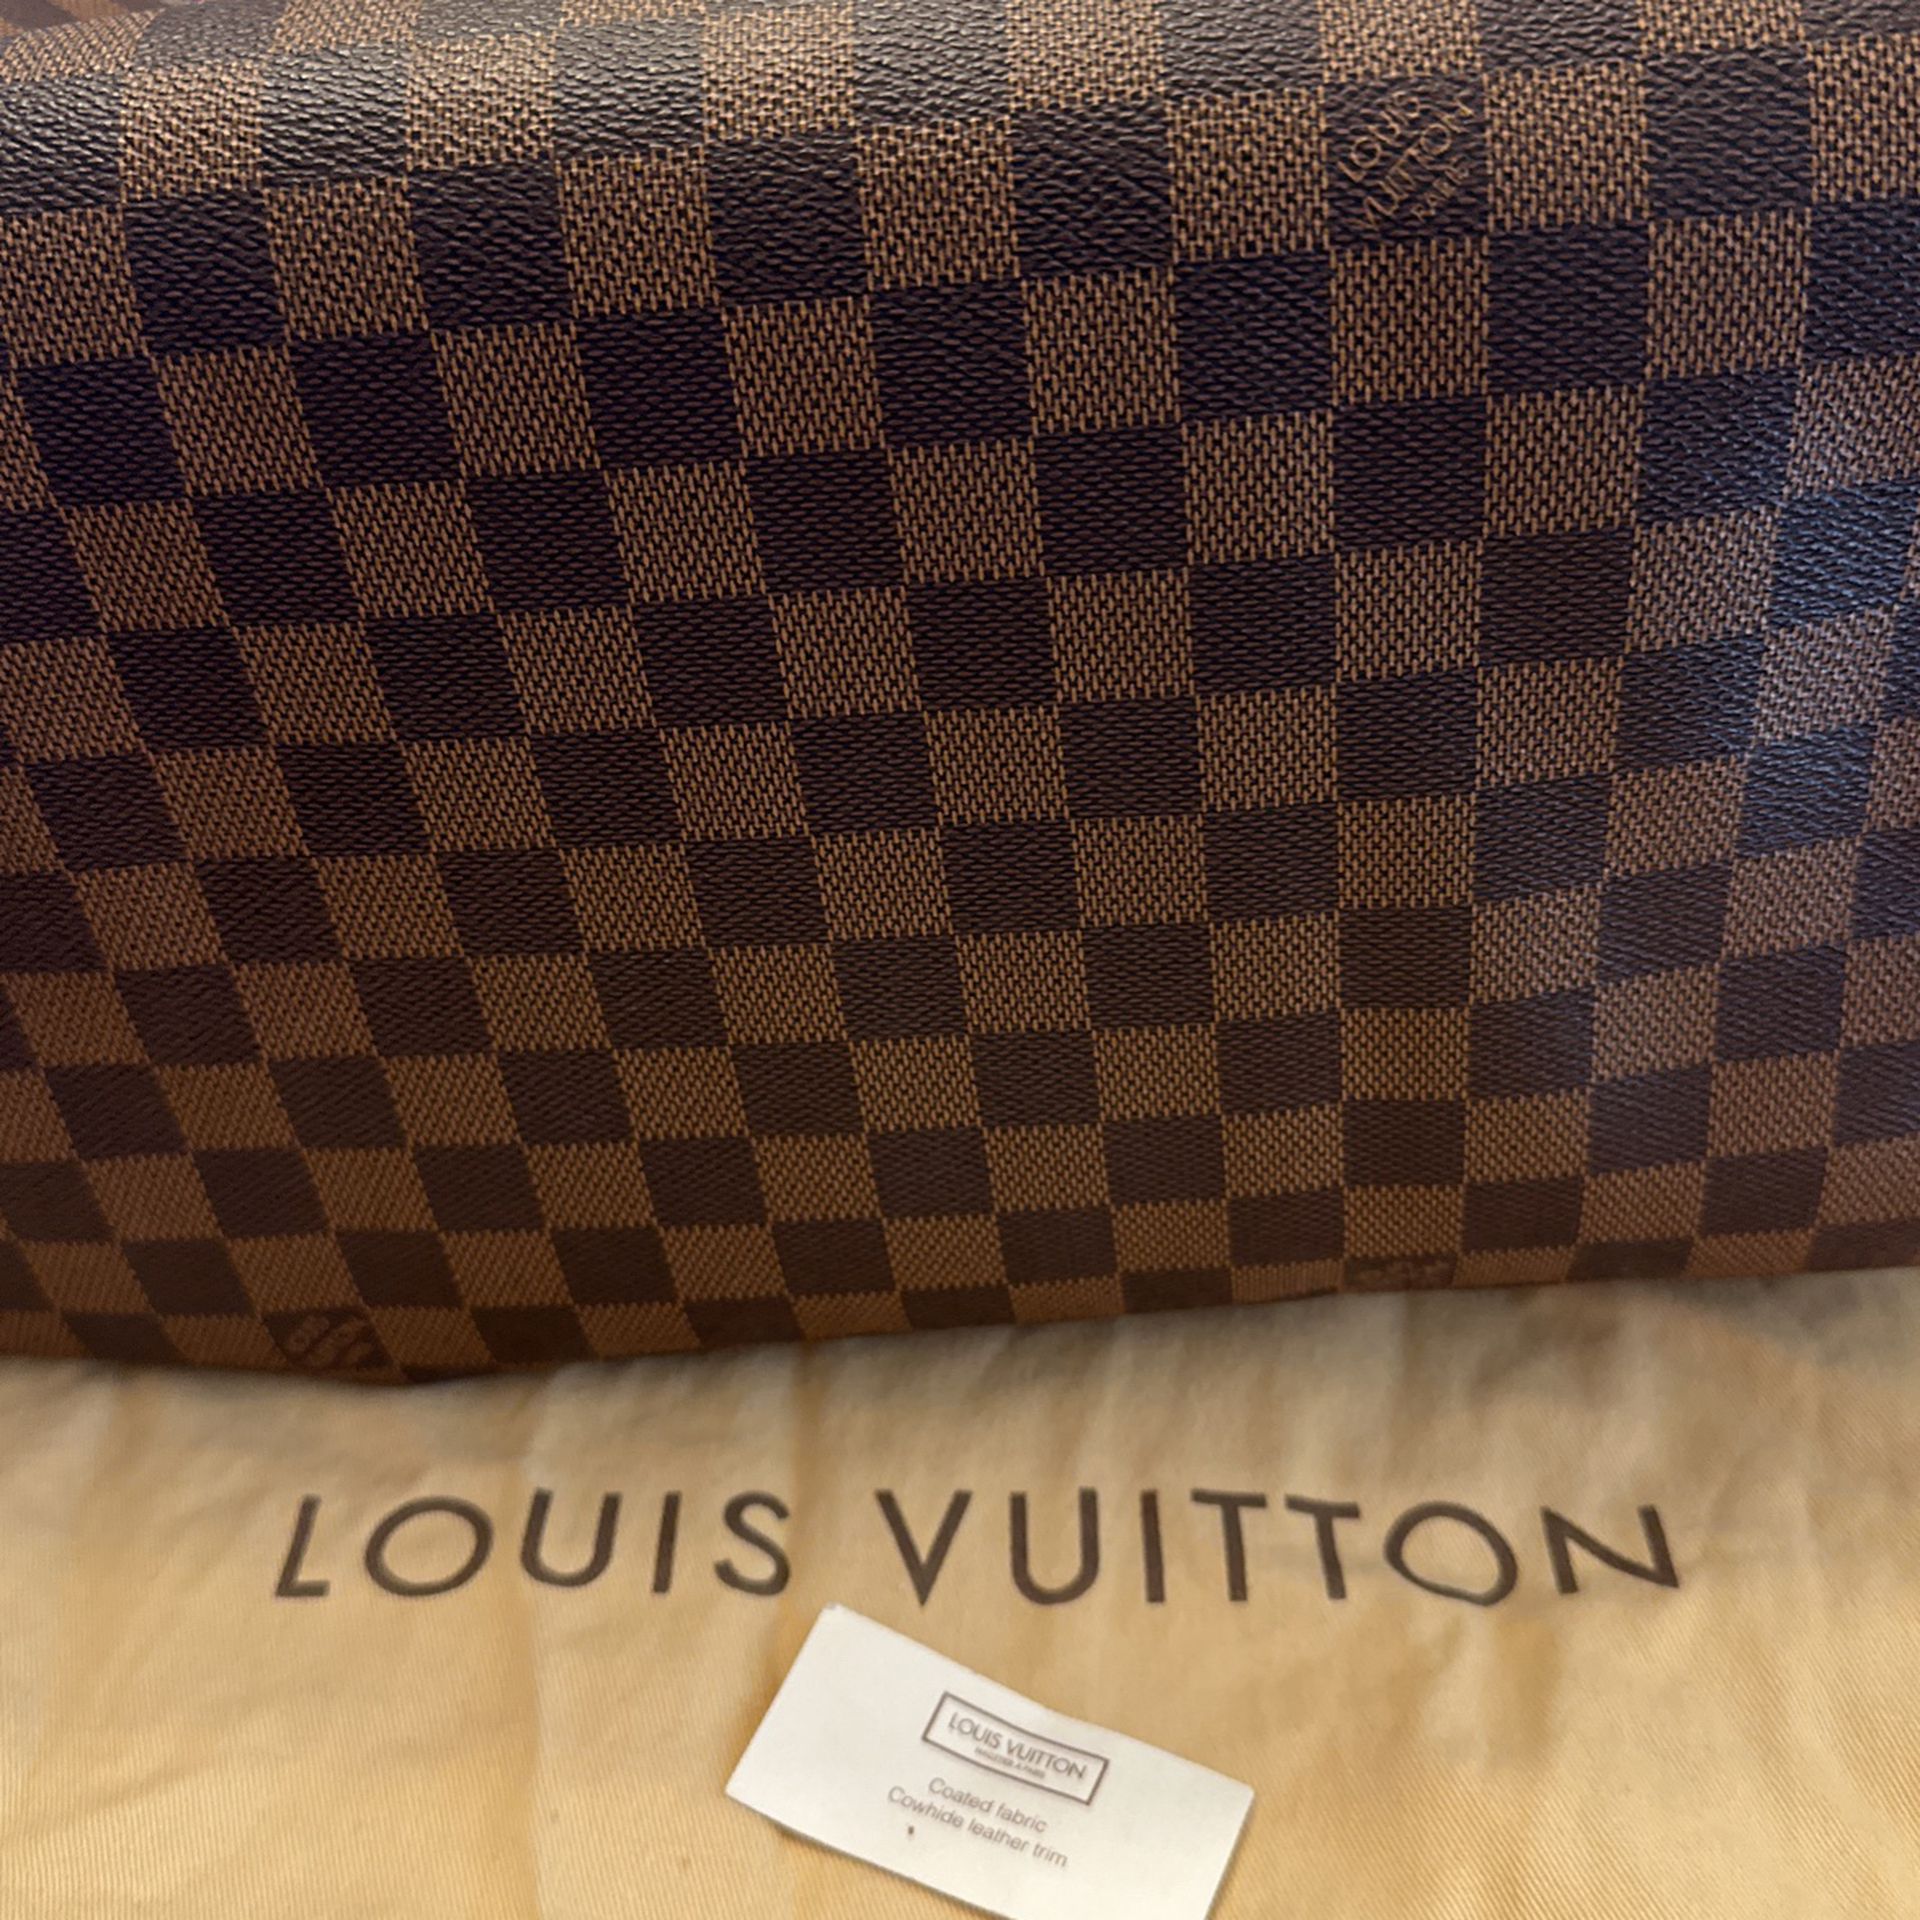 Authentic Louis Vuitton Kensington Bowling Bag for Sale in Mesa, AZ -  OfferUp